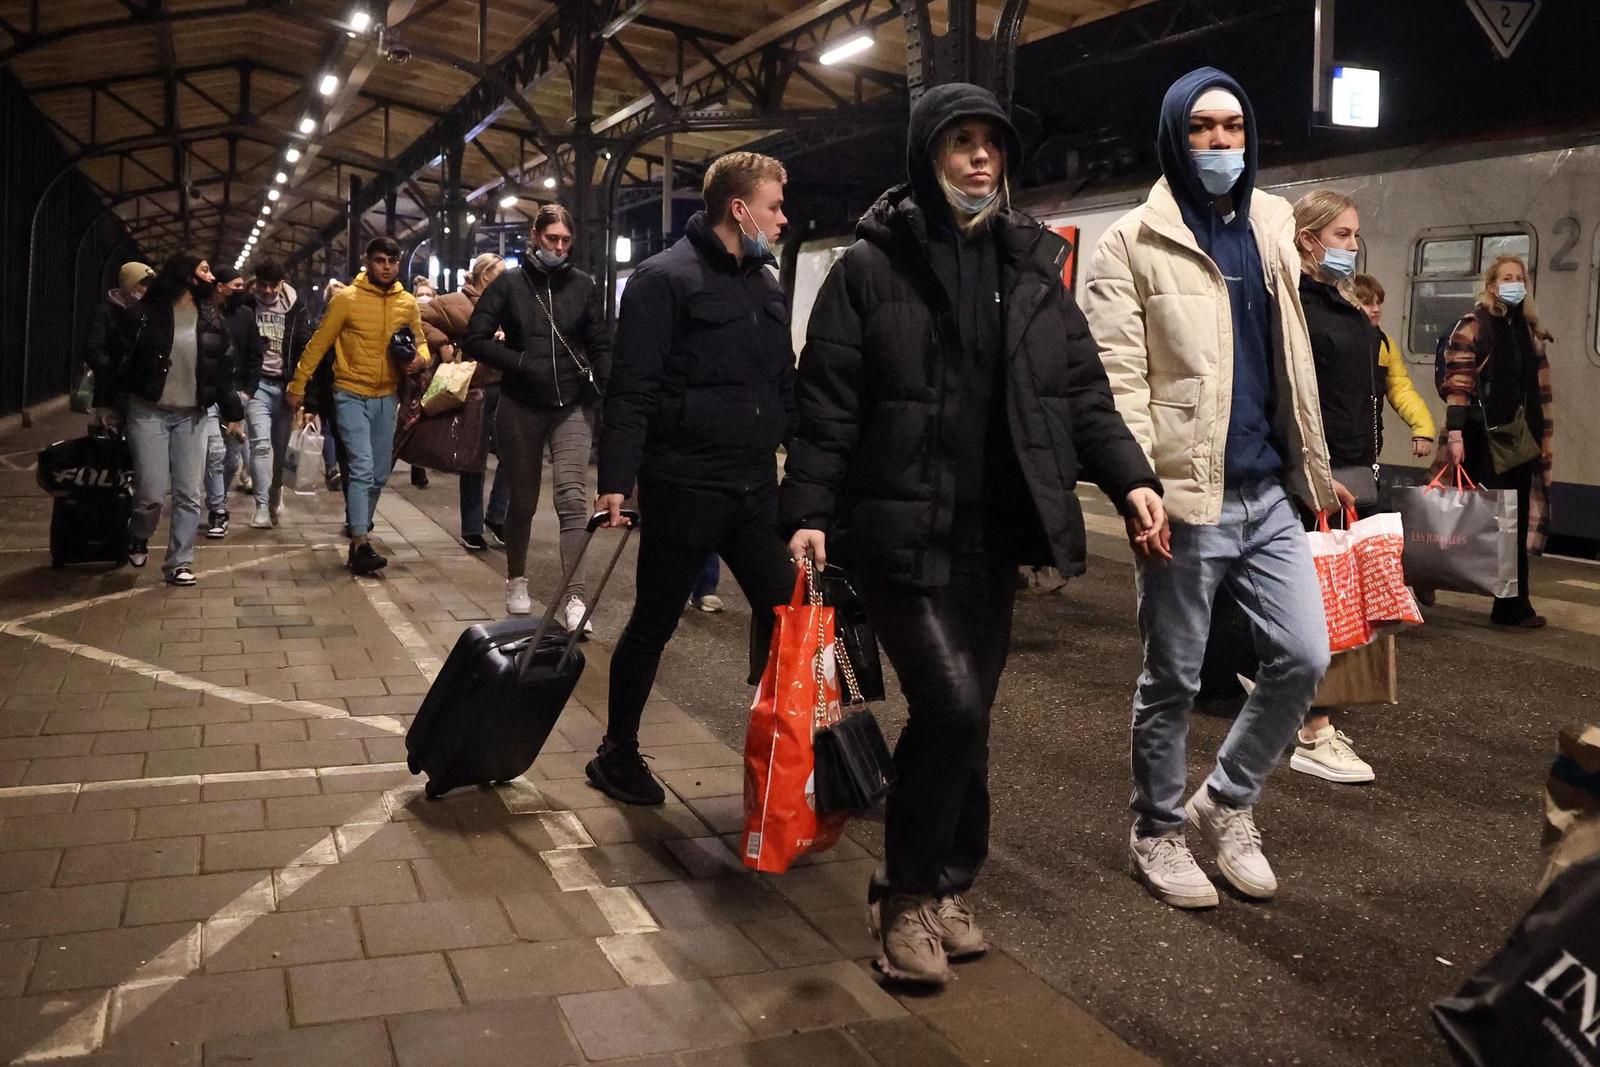 Pour fuir le confinement, des touristes néerlandais se rendent en Belgique